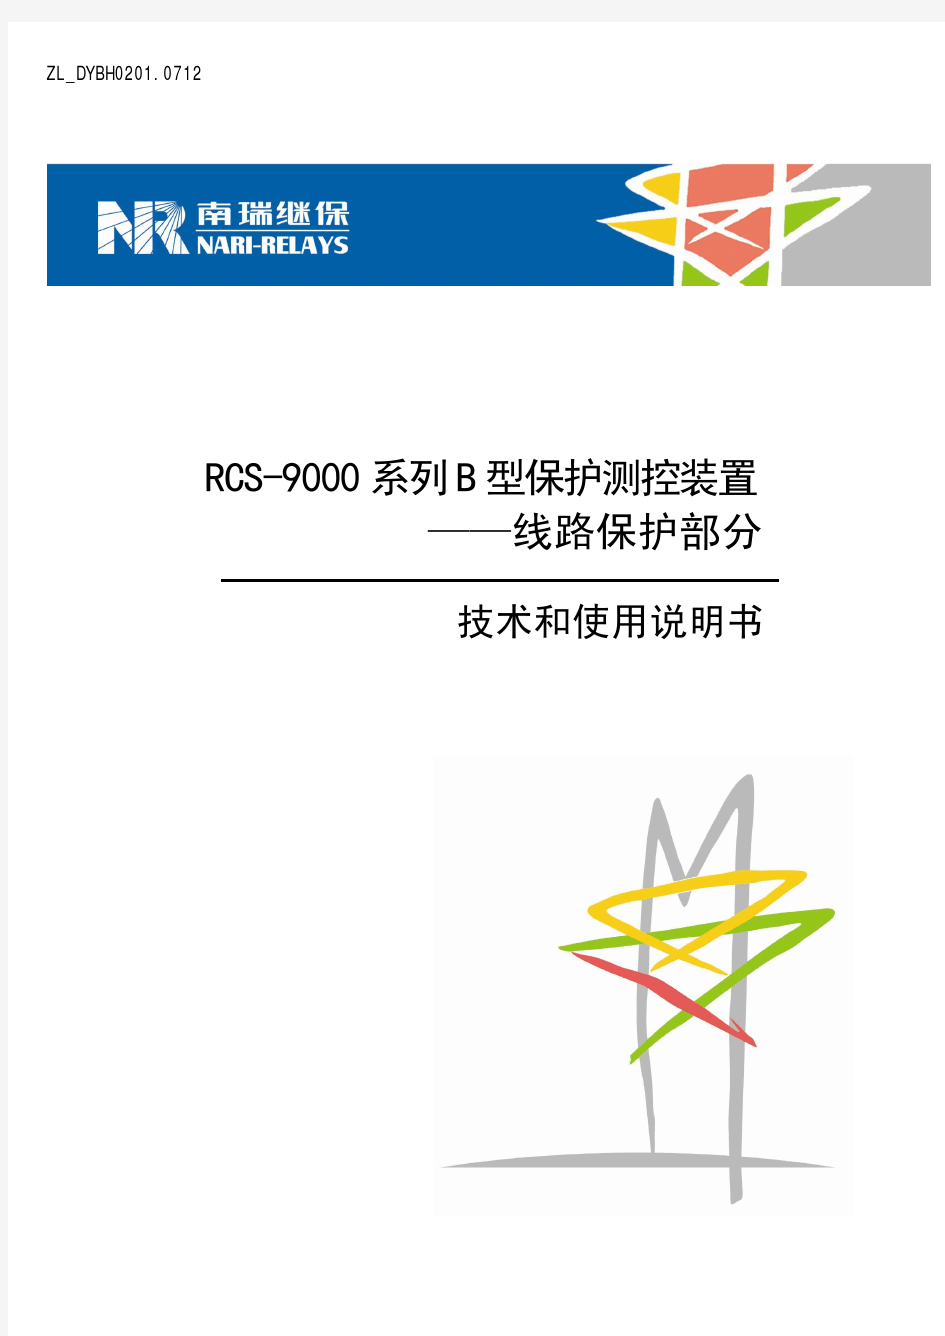 RCS-9000系列B型线路保护部分技术和使用说明书